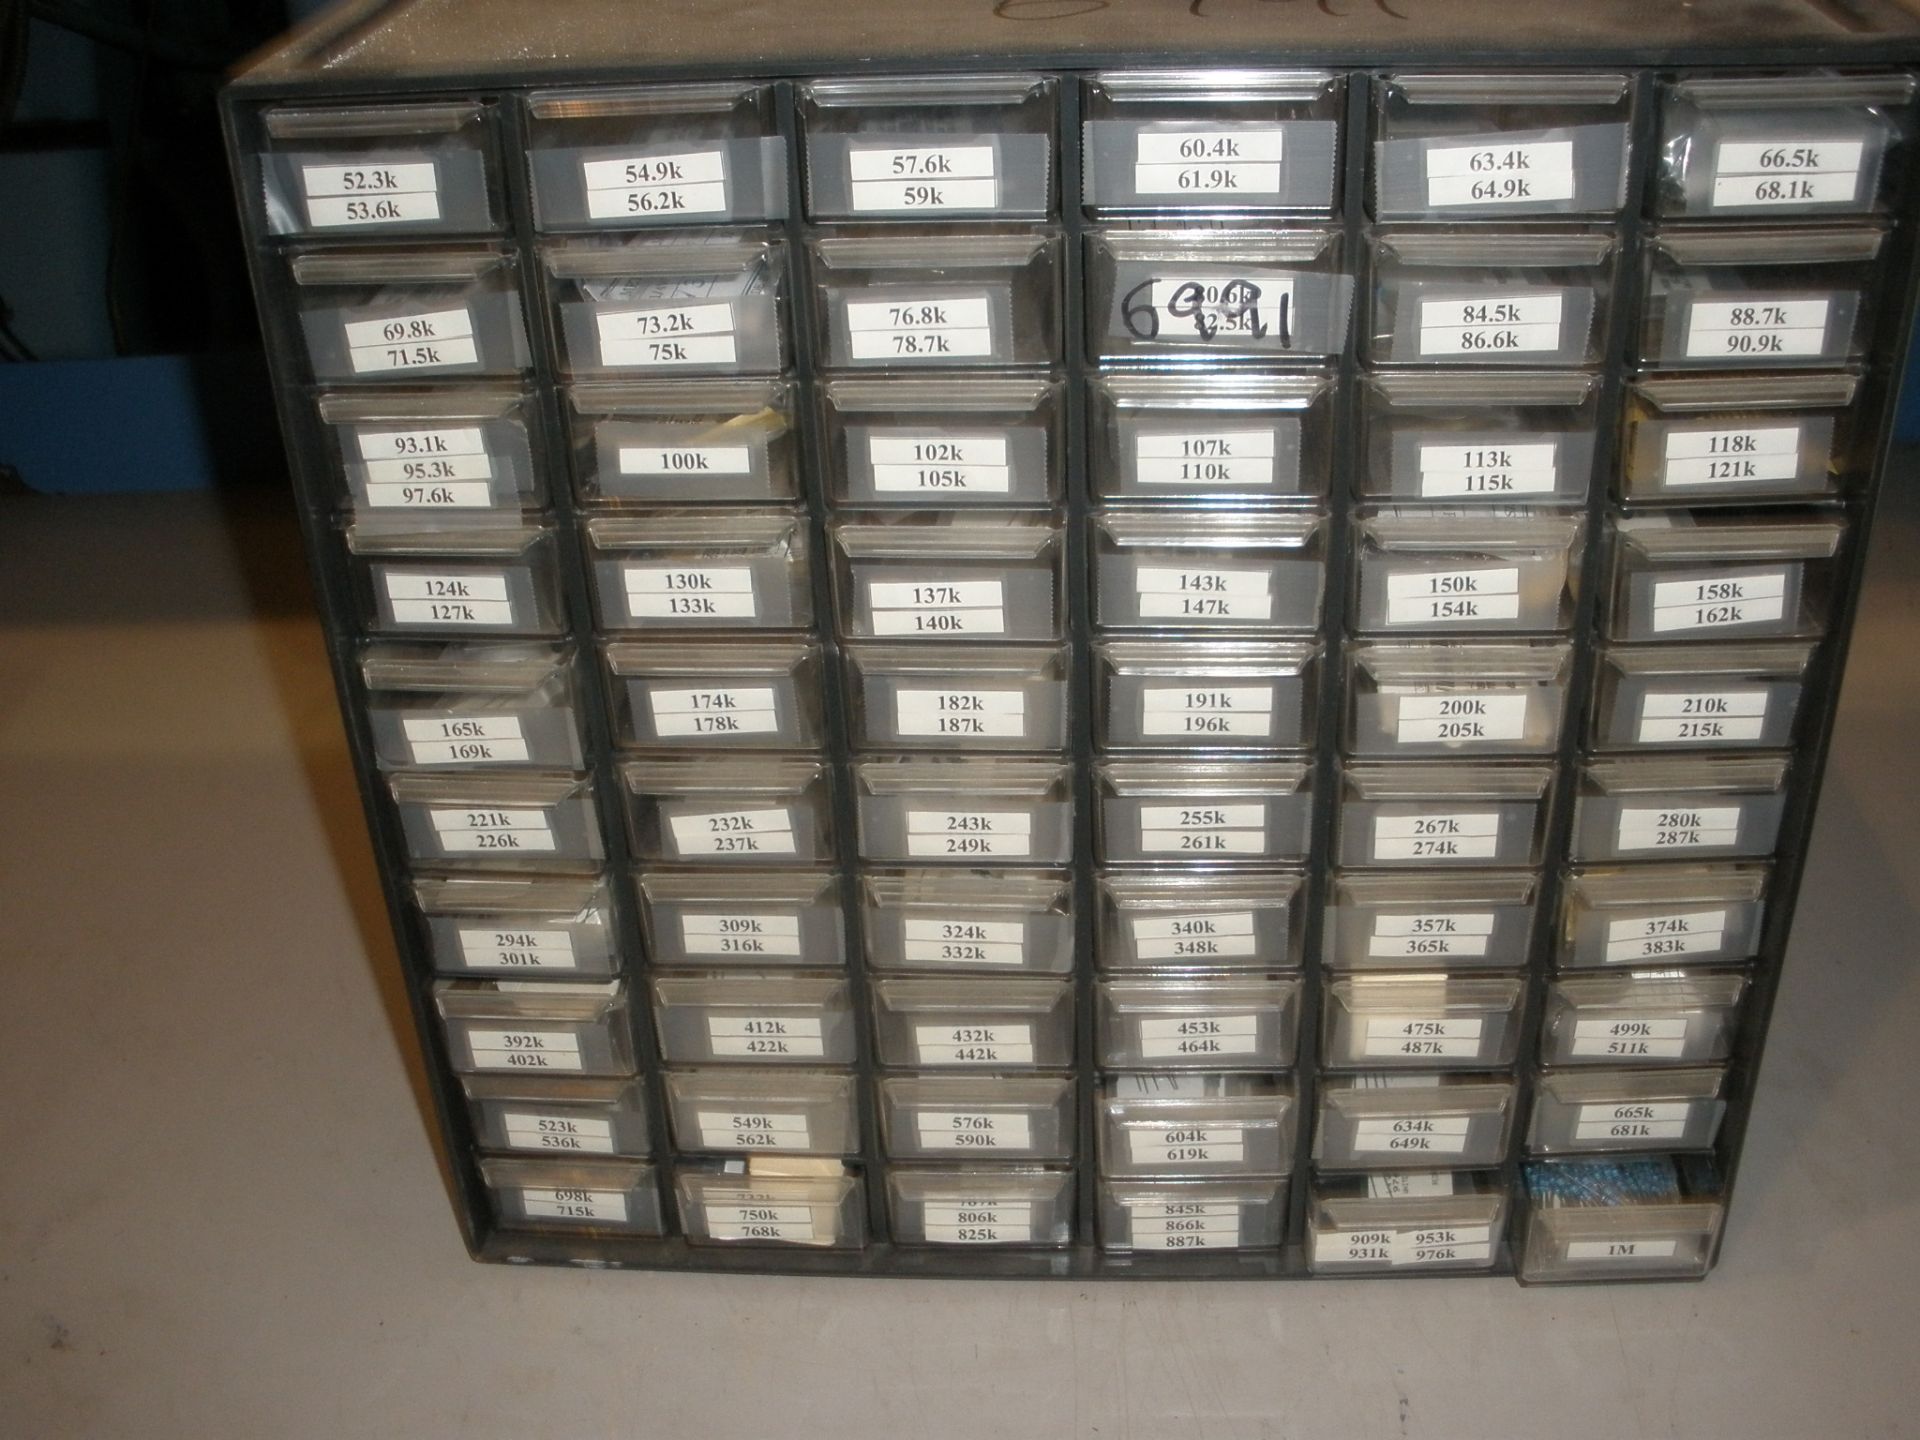 Metal Film Resistors